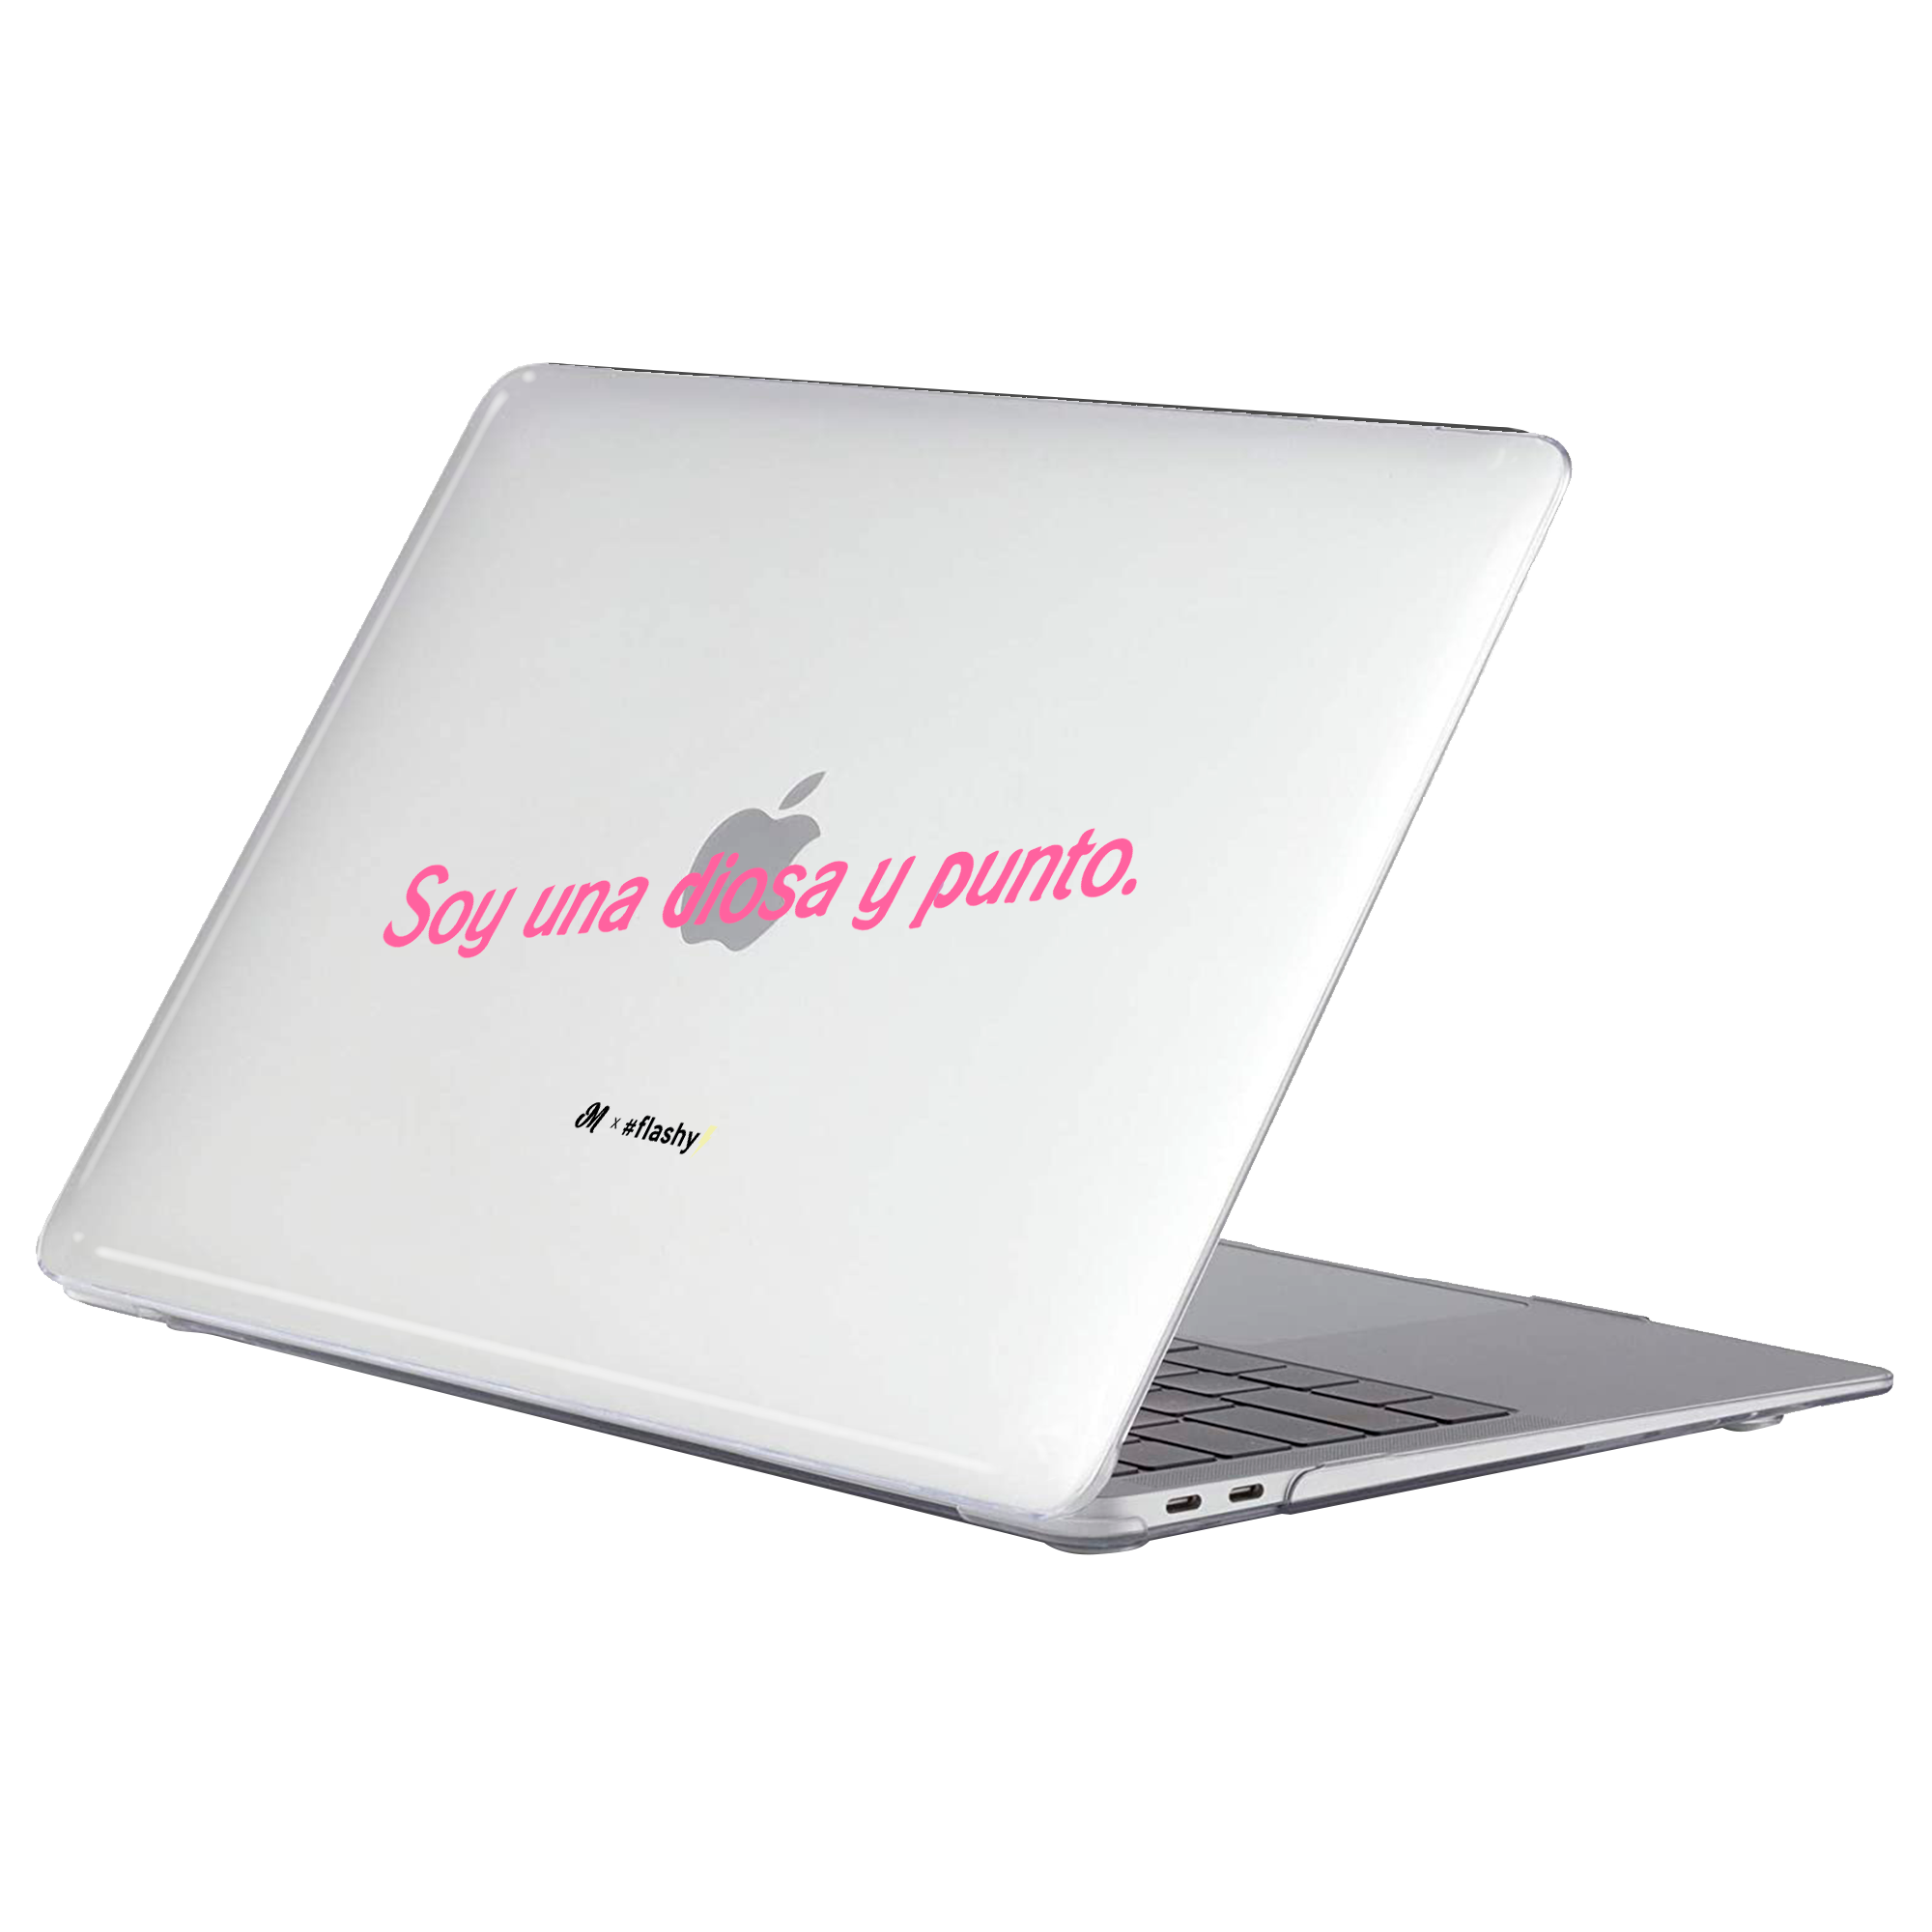 Soy una Diosa y punto MacBook Case - Mandala Cases